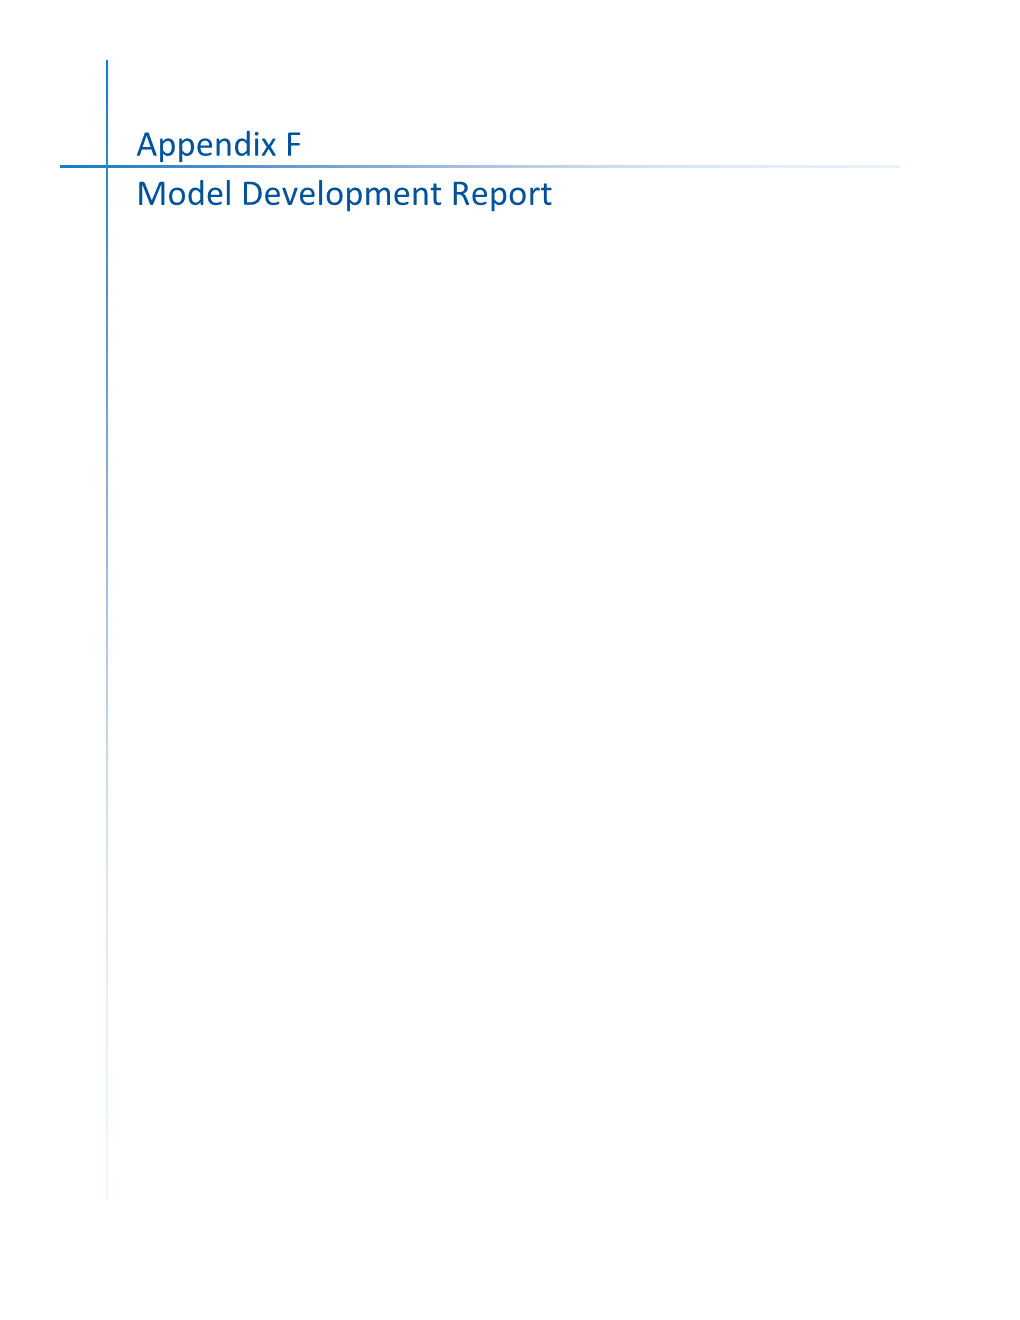 Appendix F Model Development Report